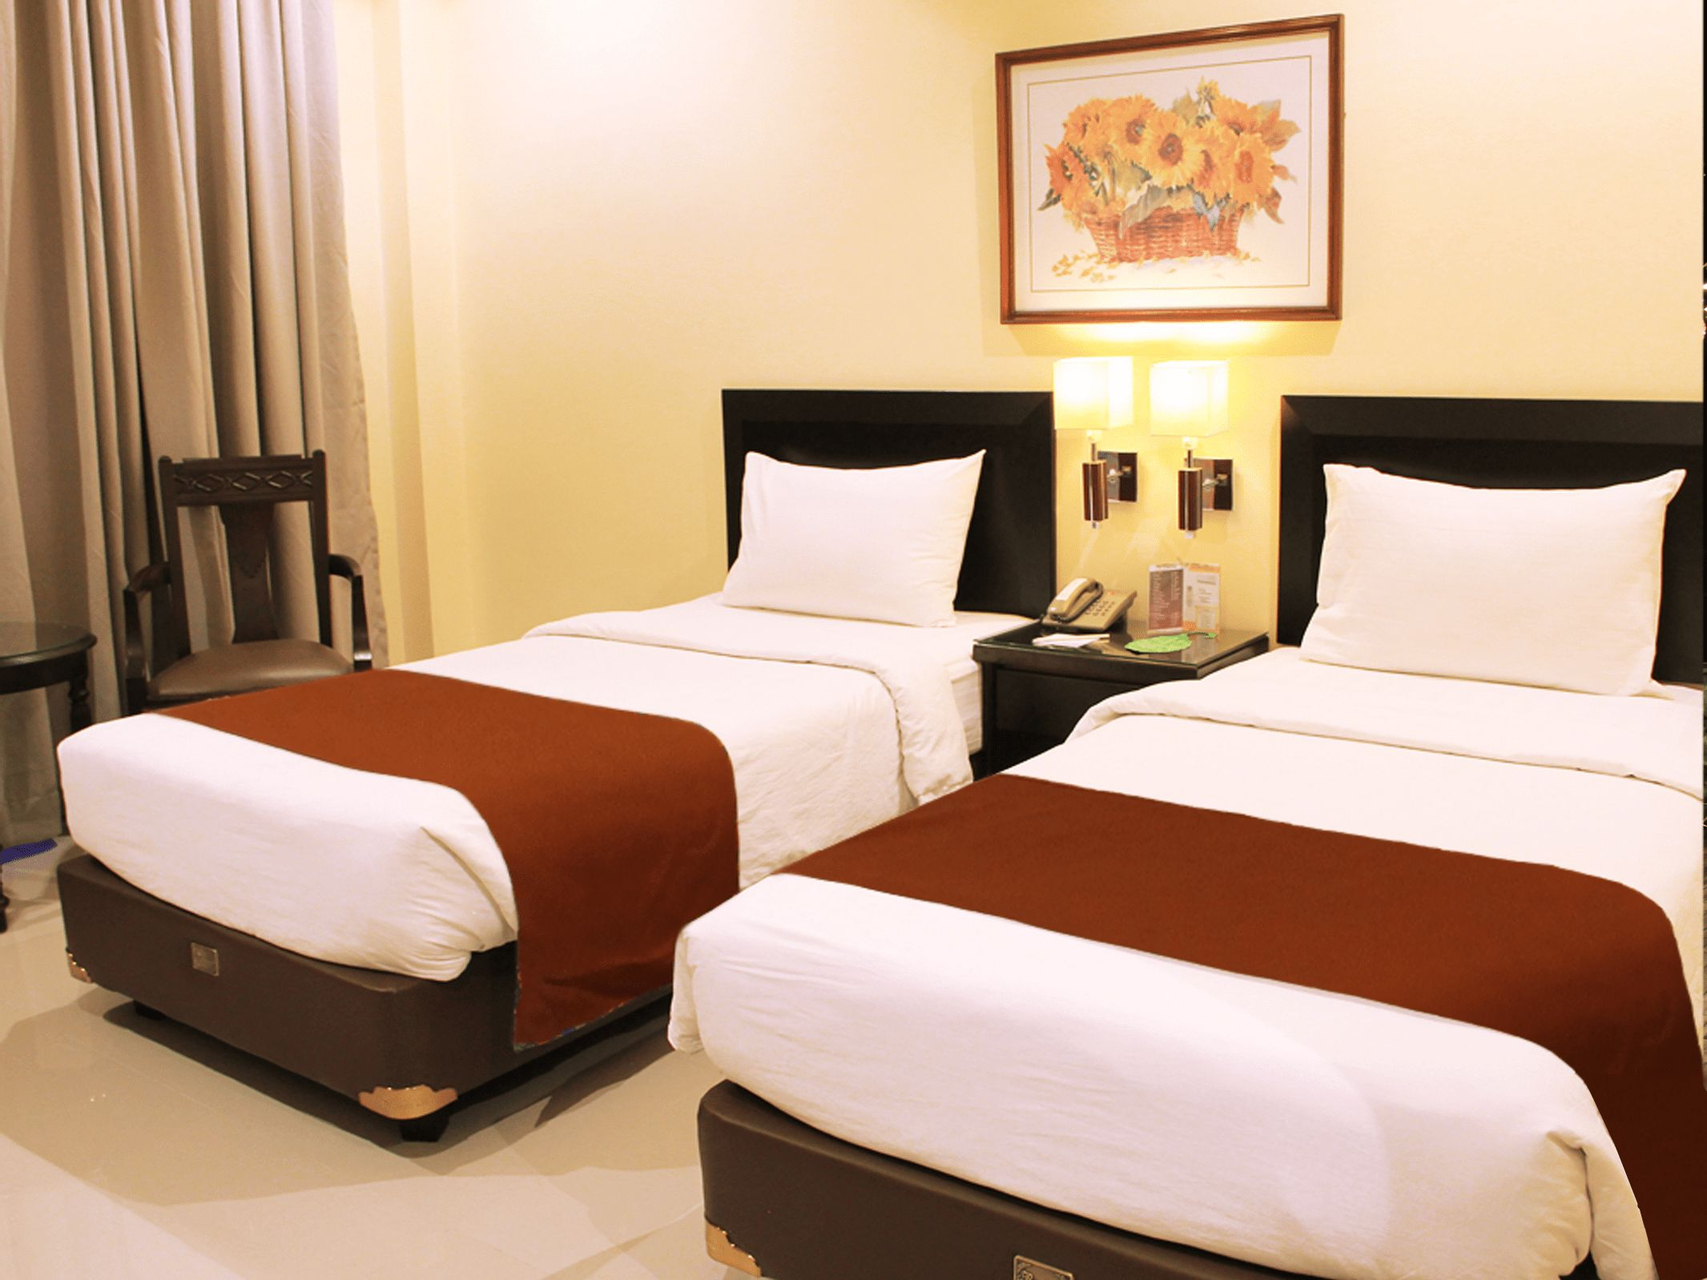 Bedroom 5, Narita Hotel Surabaya, Surabaya